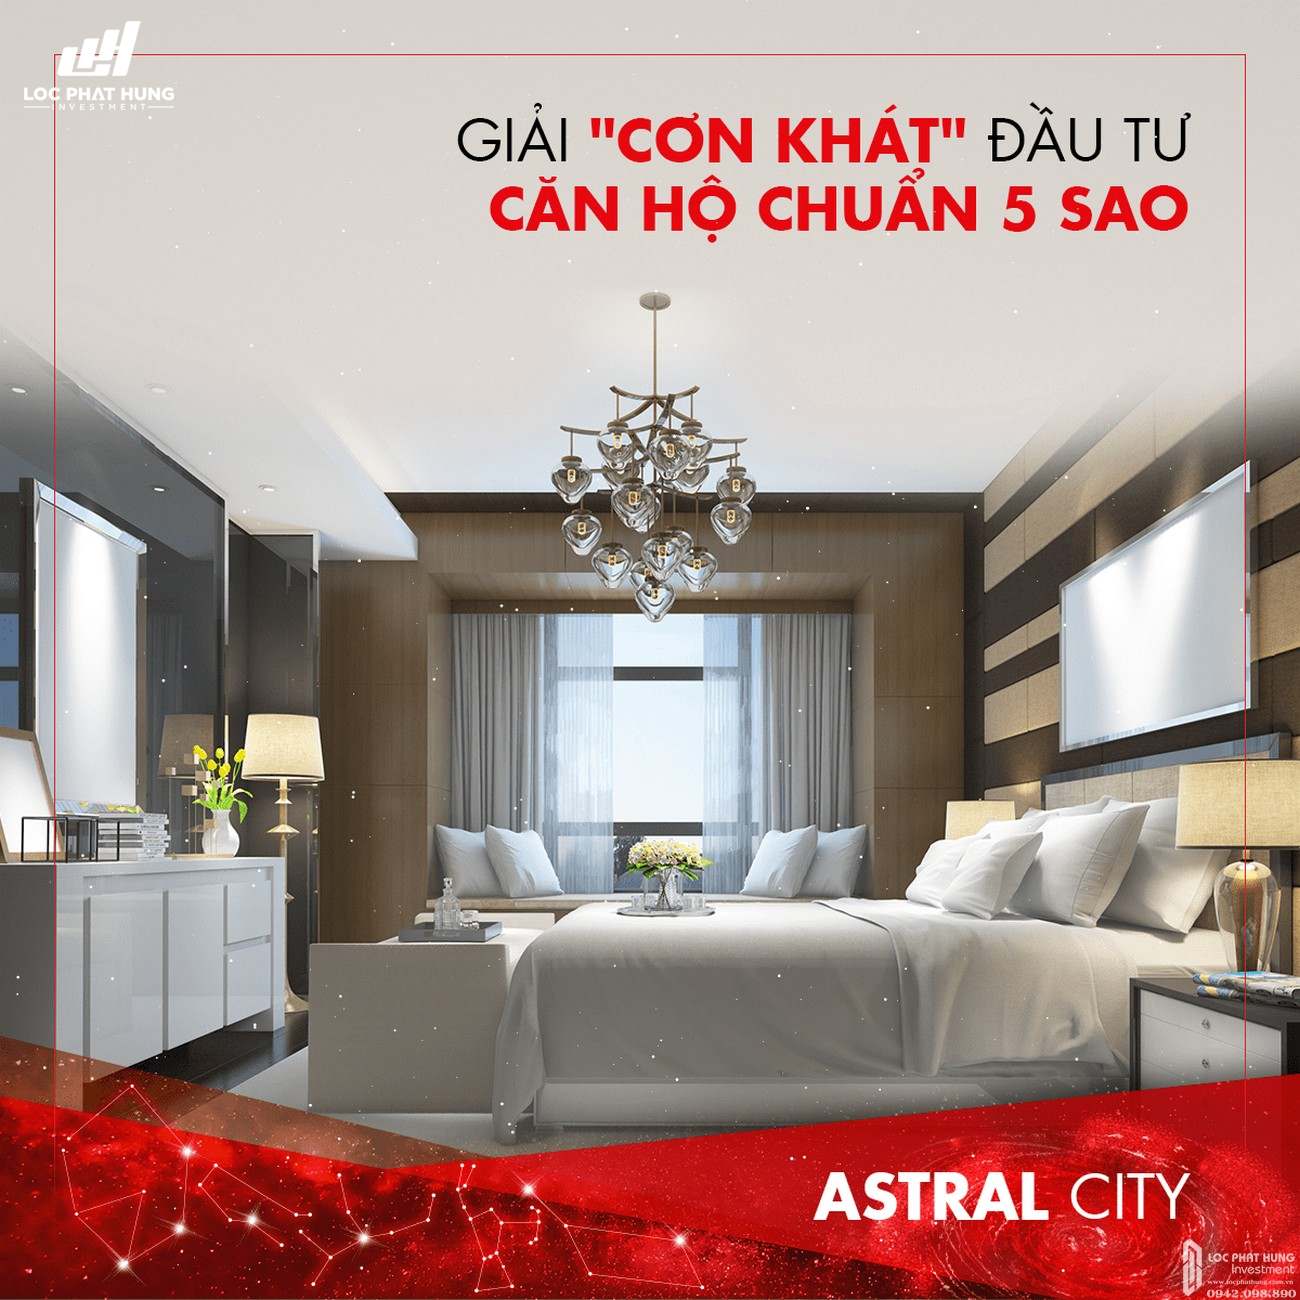 Những ưu điểm vượt trội đưa dự án căn hộ cho thuê Astral City thành tâm điểm Bình Dương